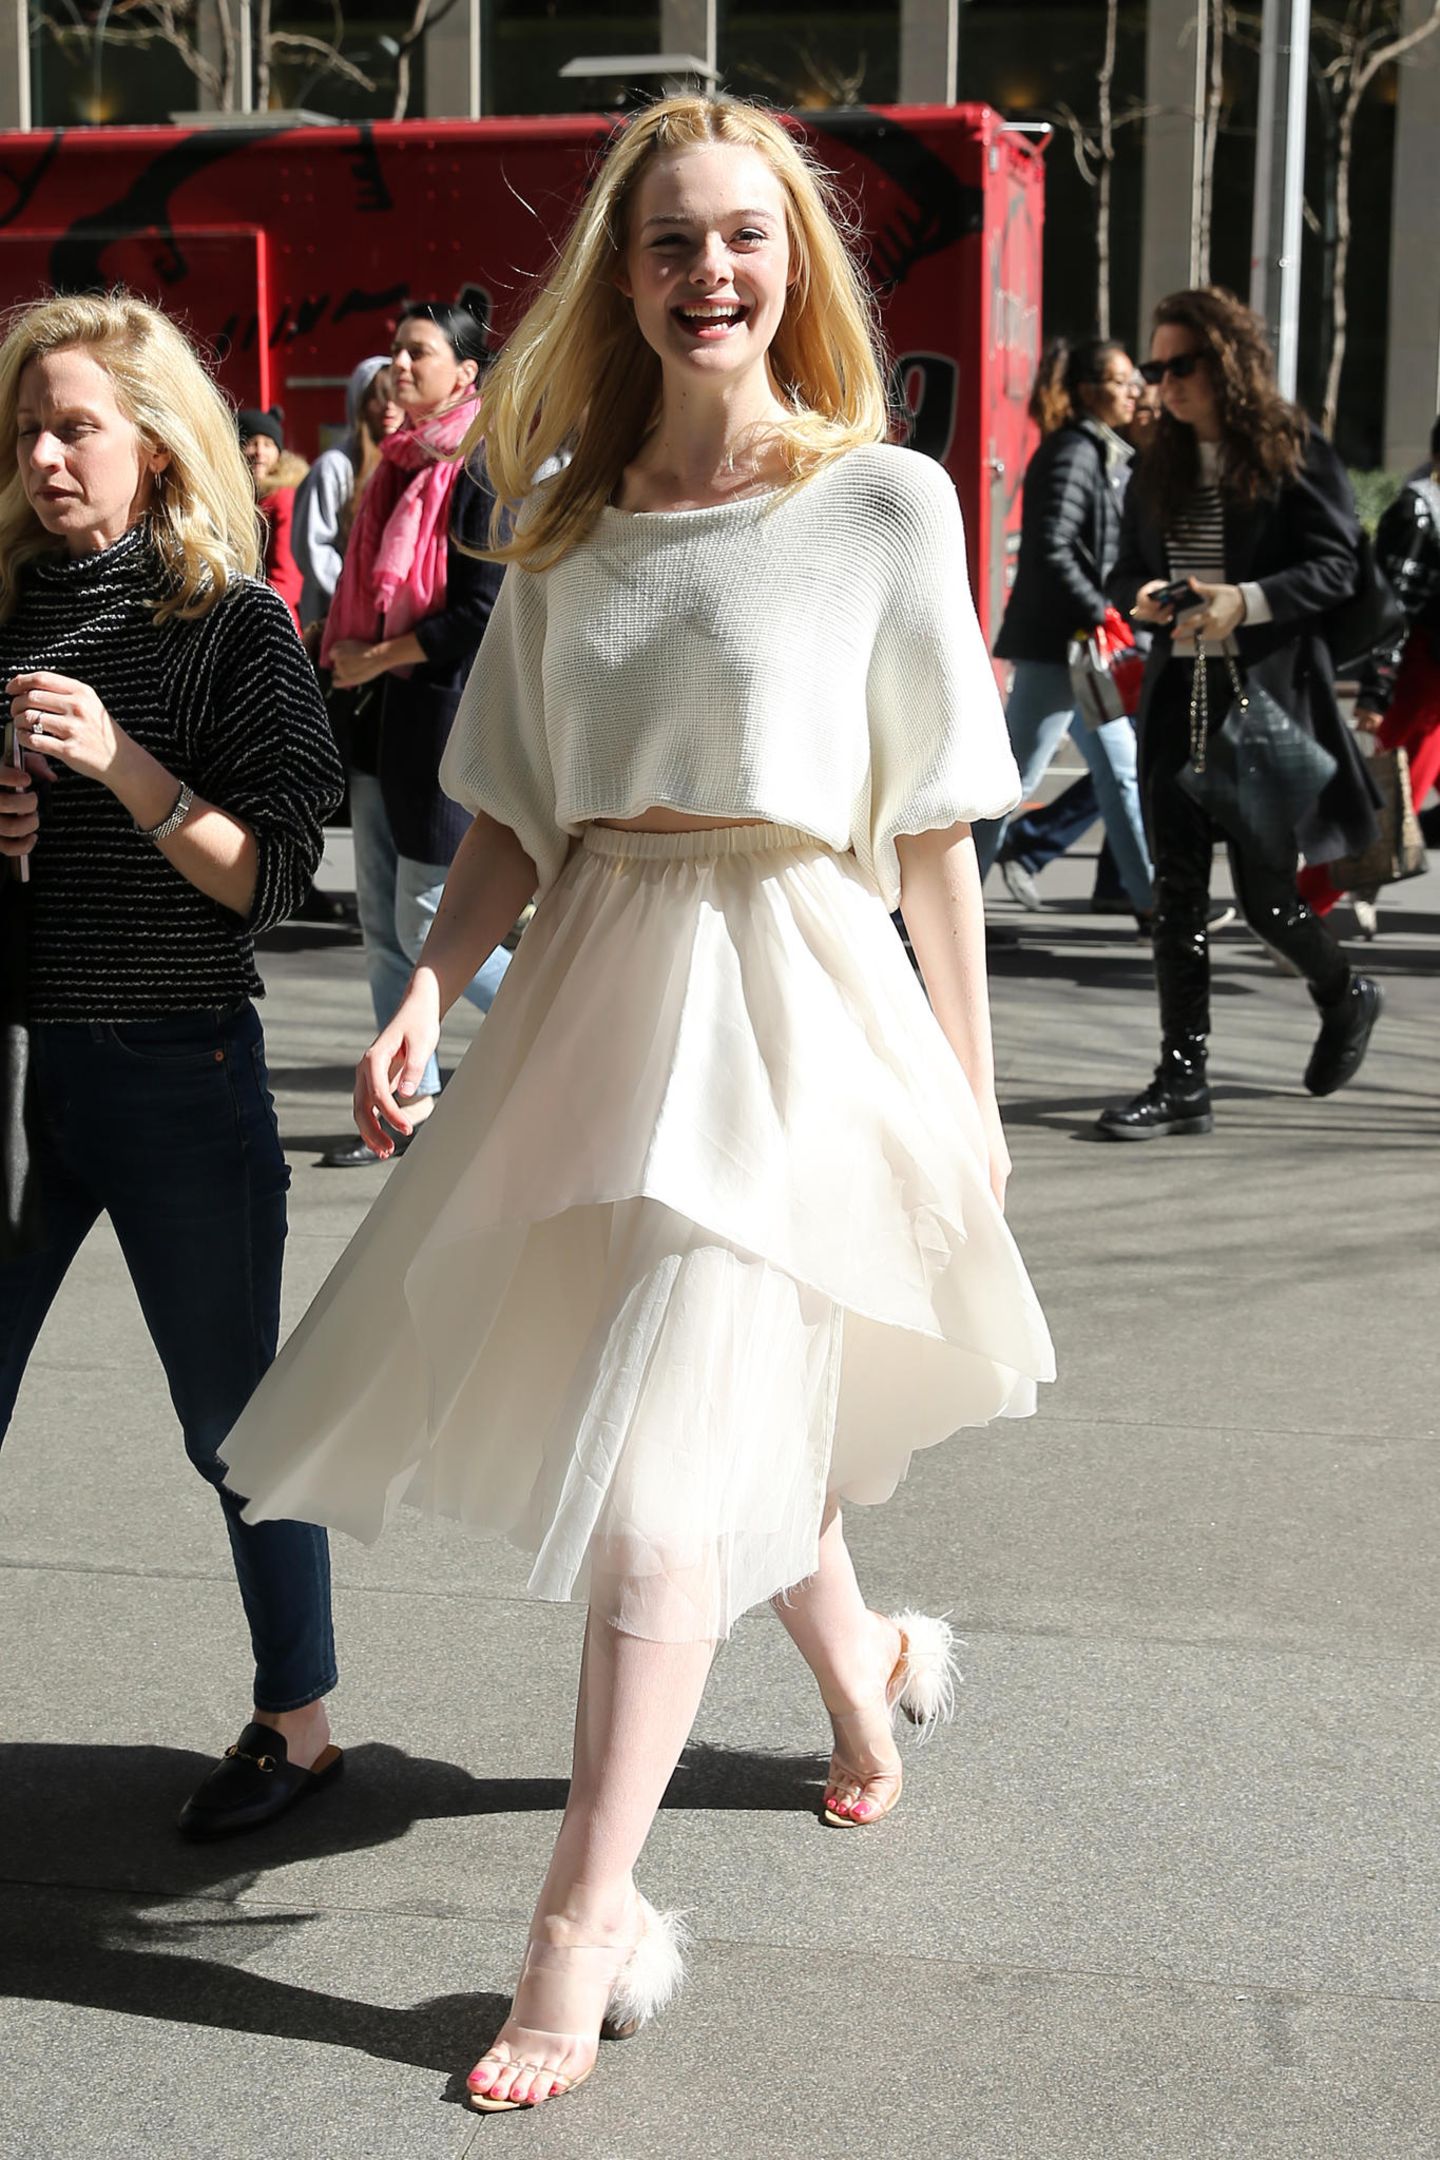 Kaum ist die Sonne raus, strahlt auch Dakota Fanning. Die Schauspielerin spaziert mit einem strahlenden Lächeln durch New York und präsentiert sich in einem komplett weißen Look. Durch ihren Porzellan-Teint gleicht sie schon fast einer elfenhafte Erscheinung. Wunderschön! 